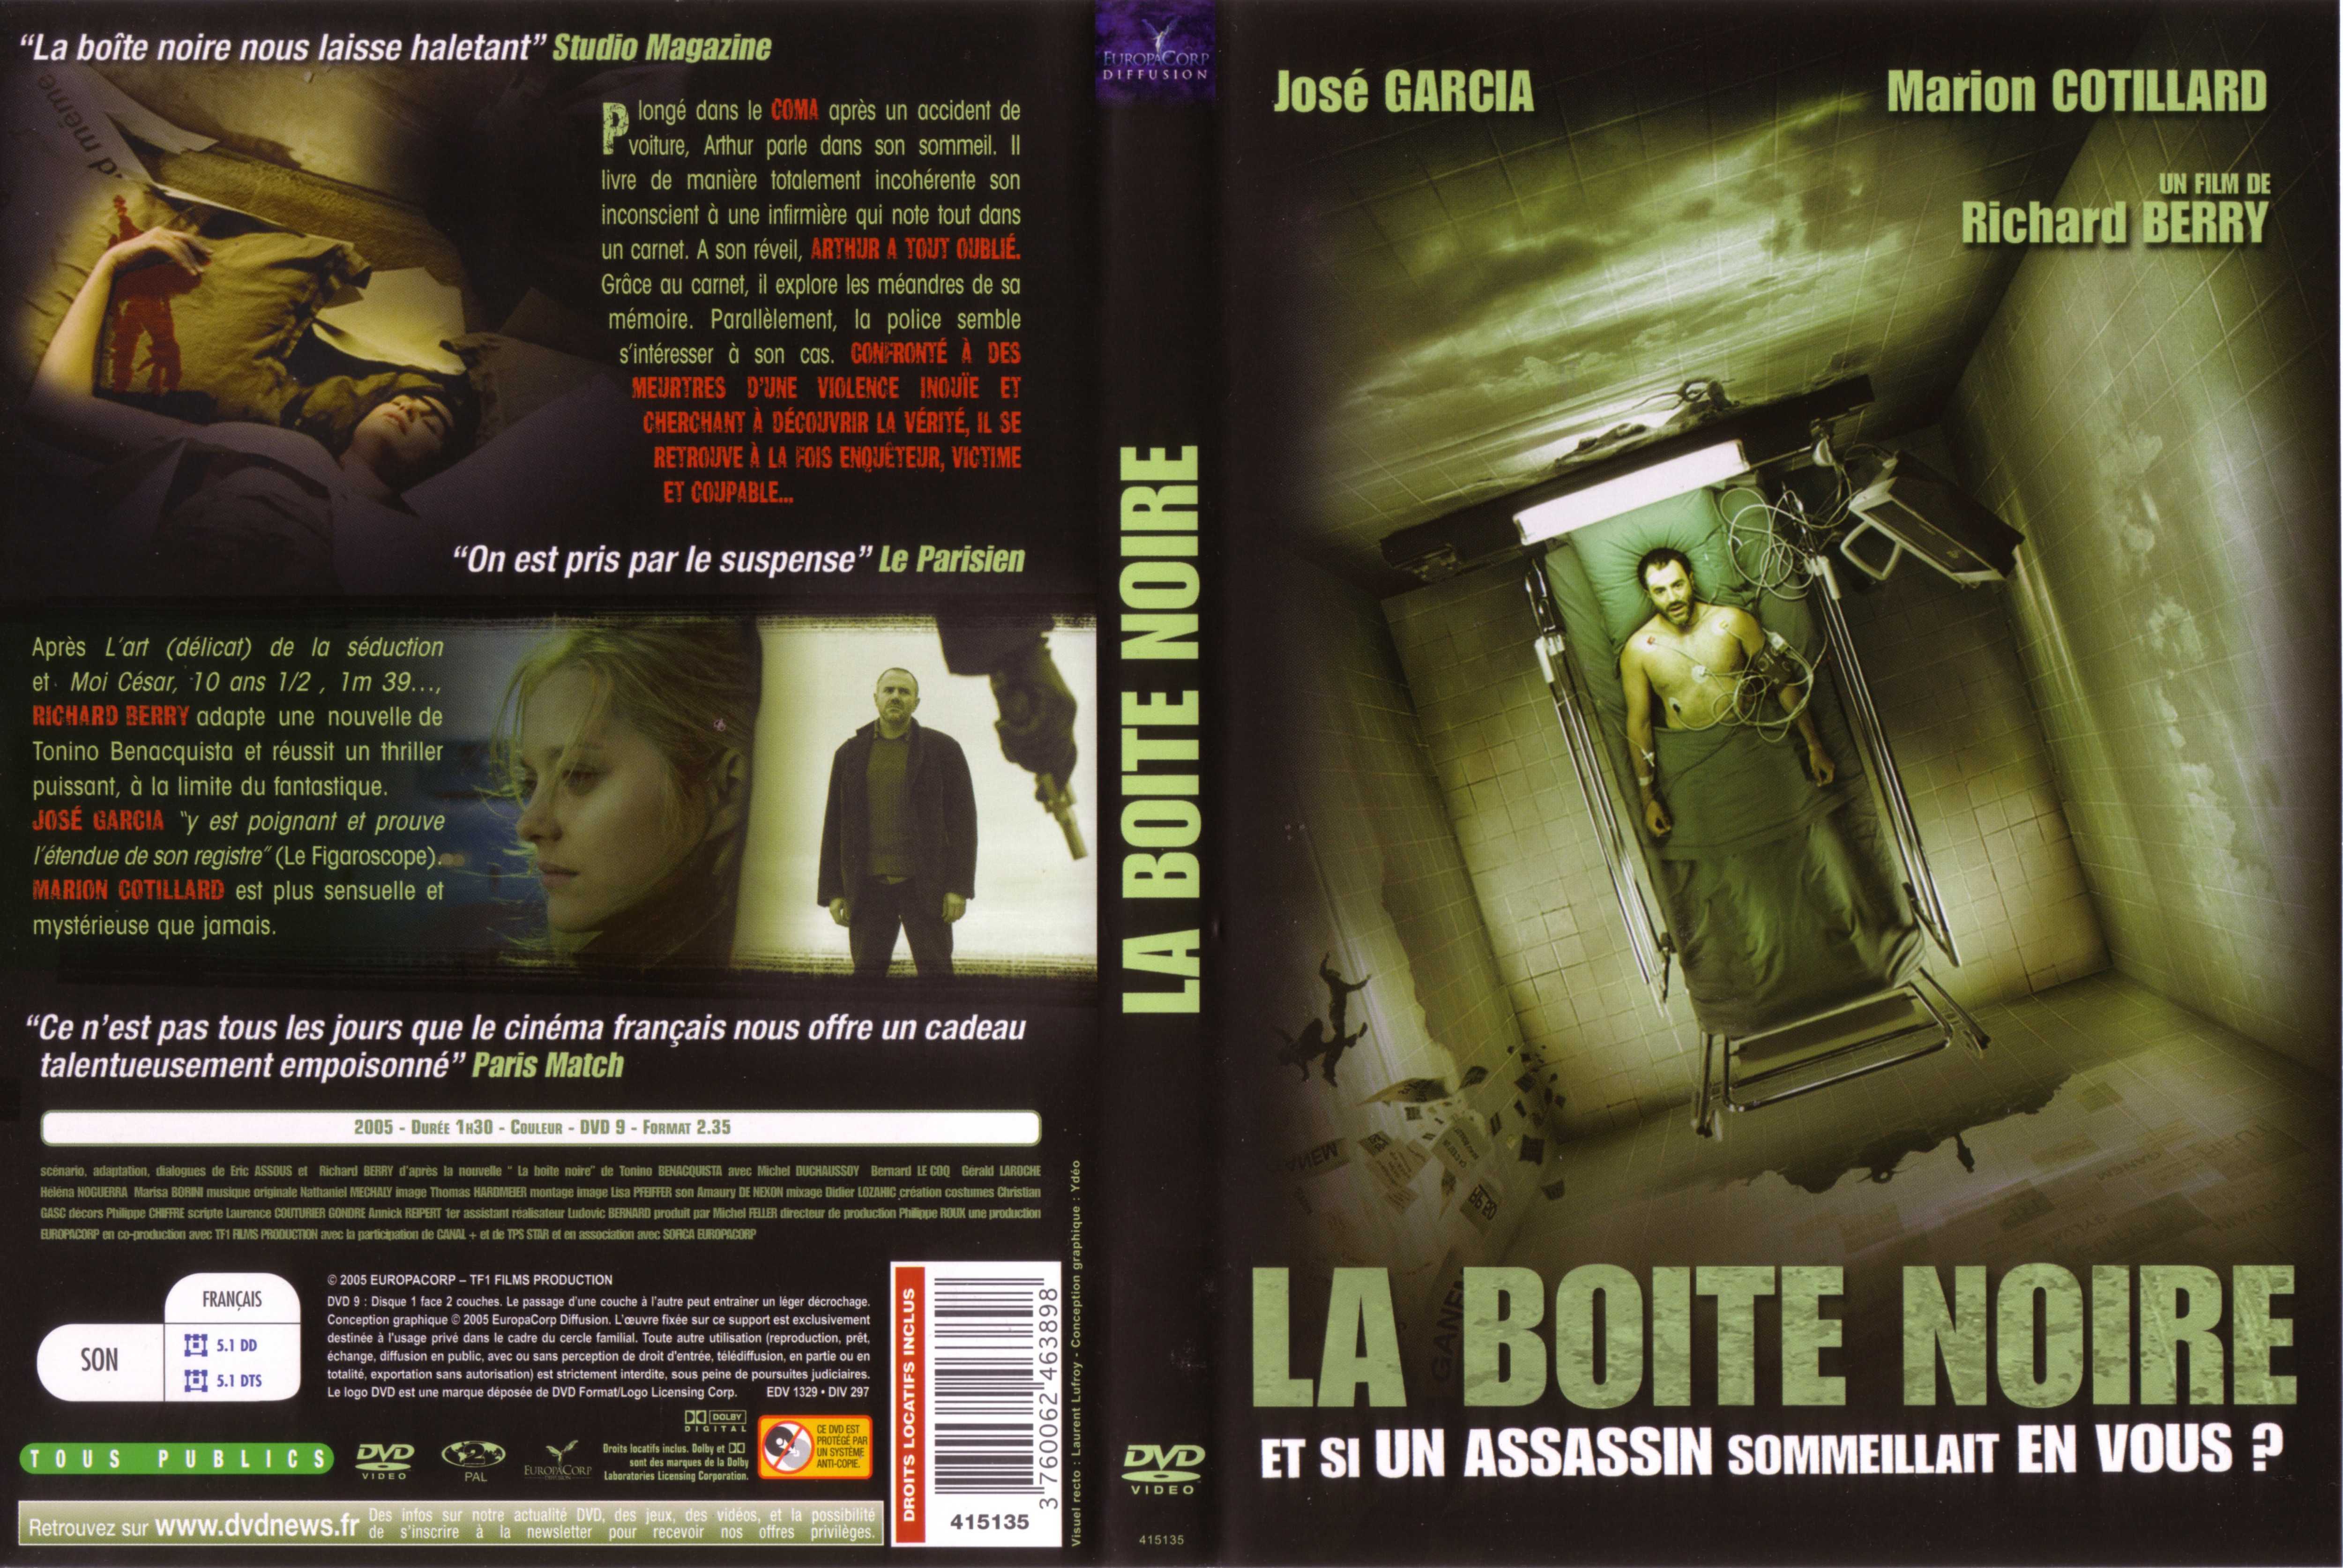 Jaquette DVD La boite noire